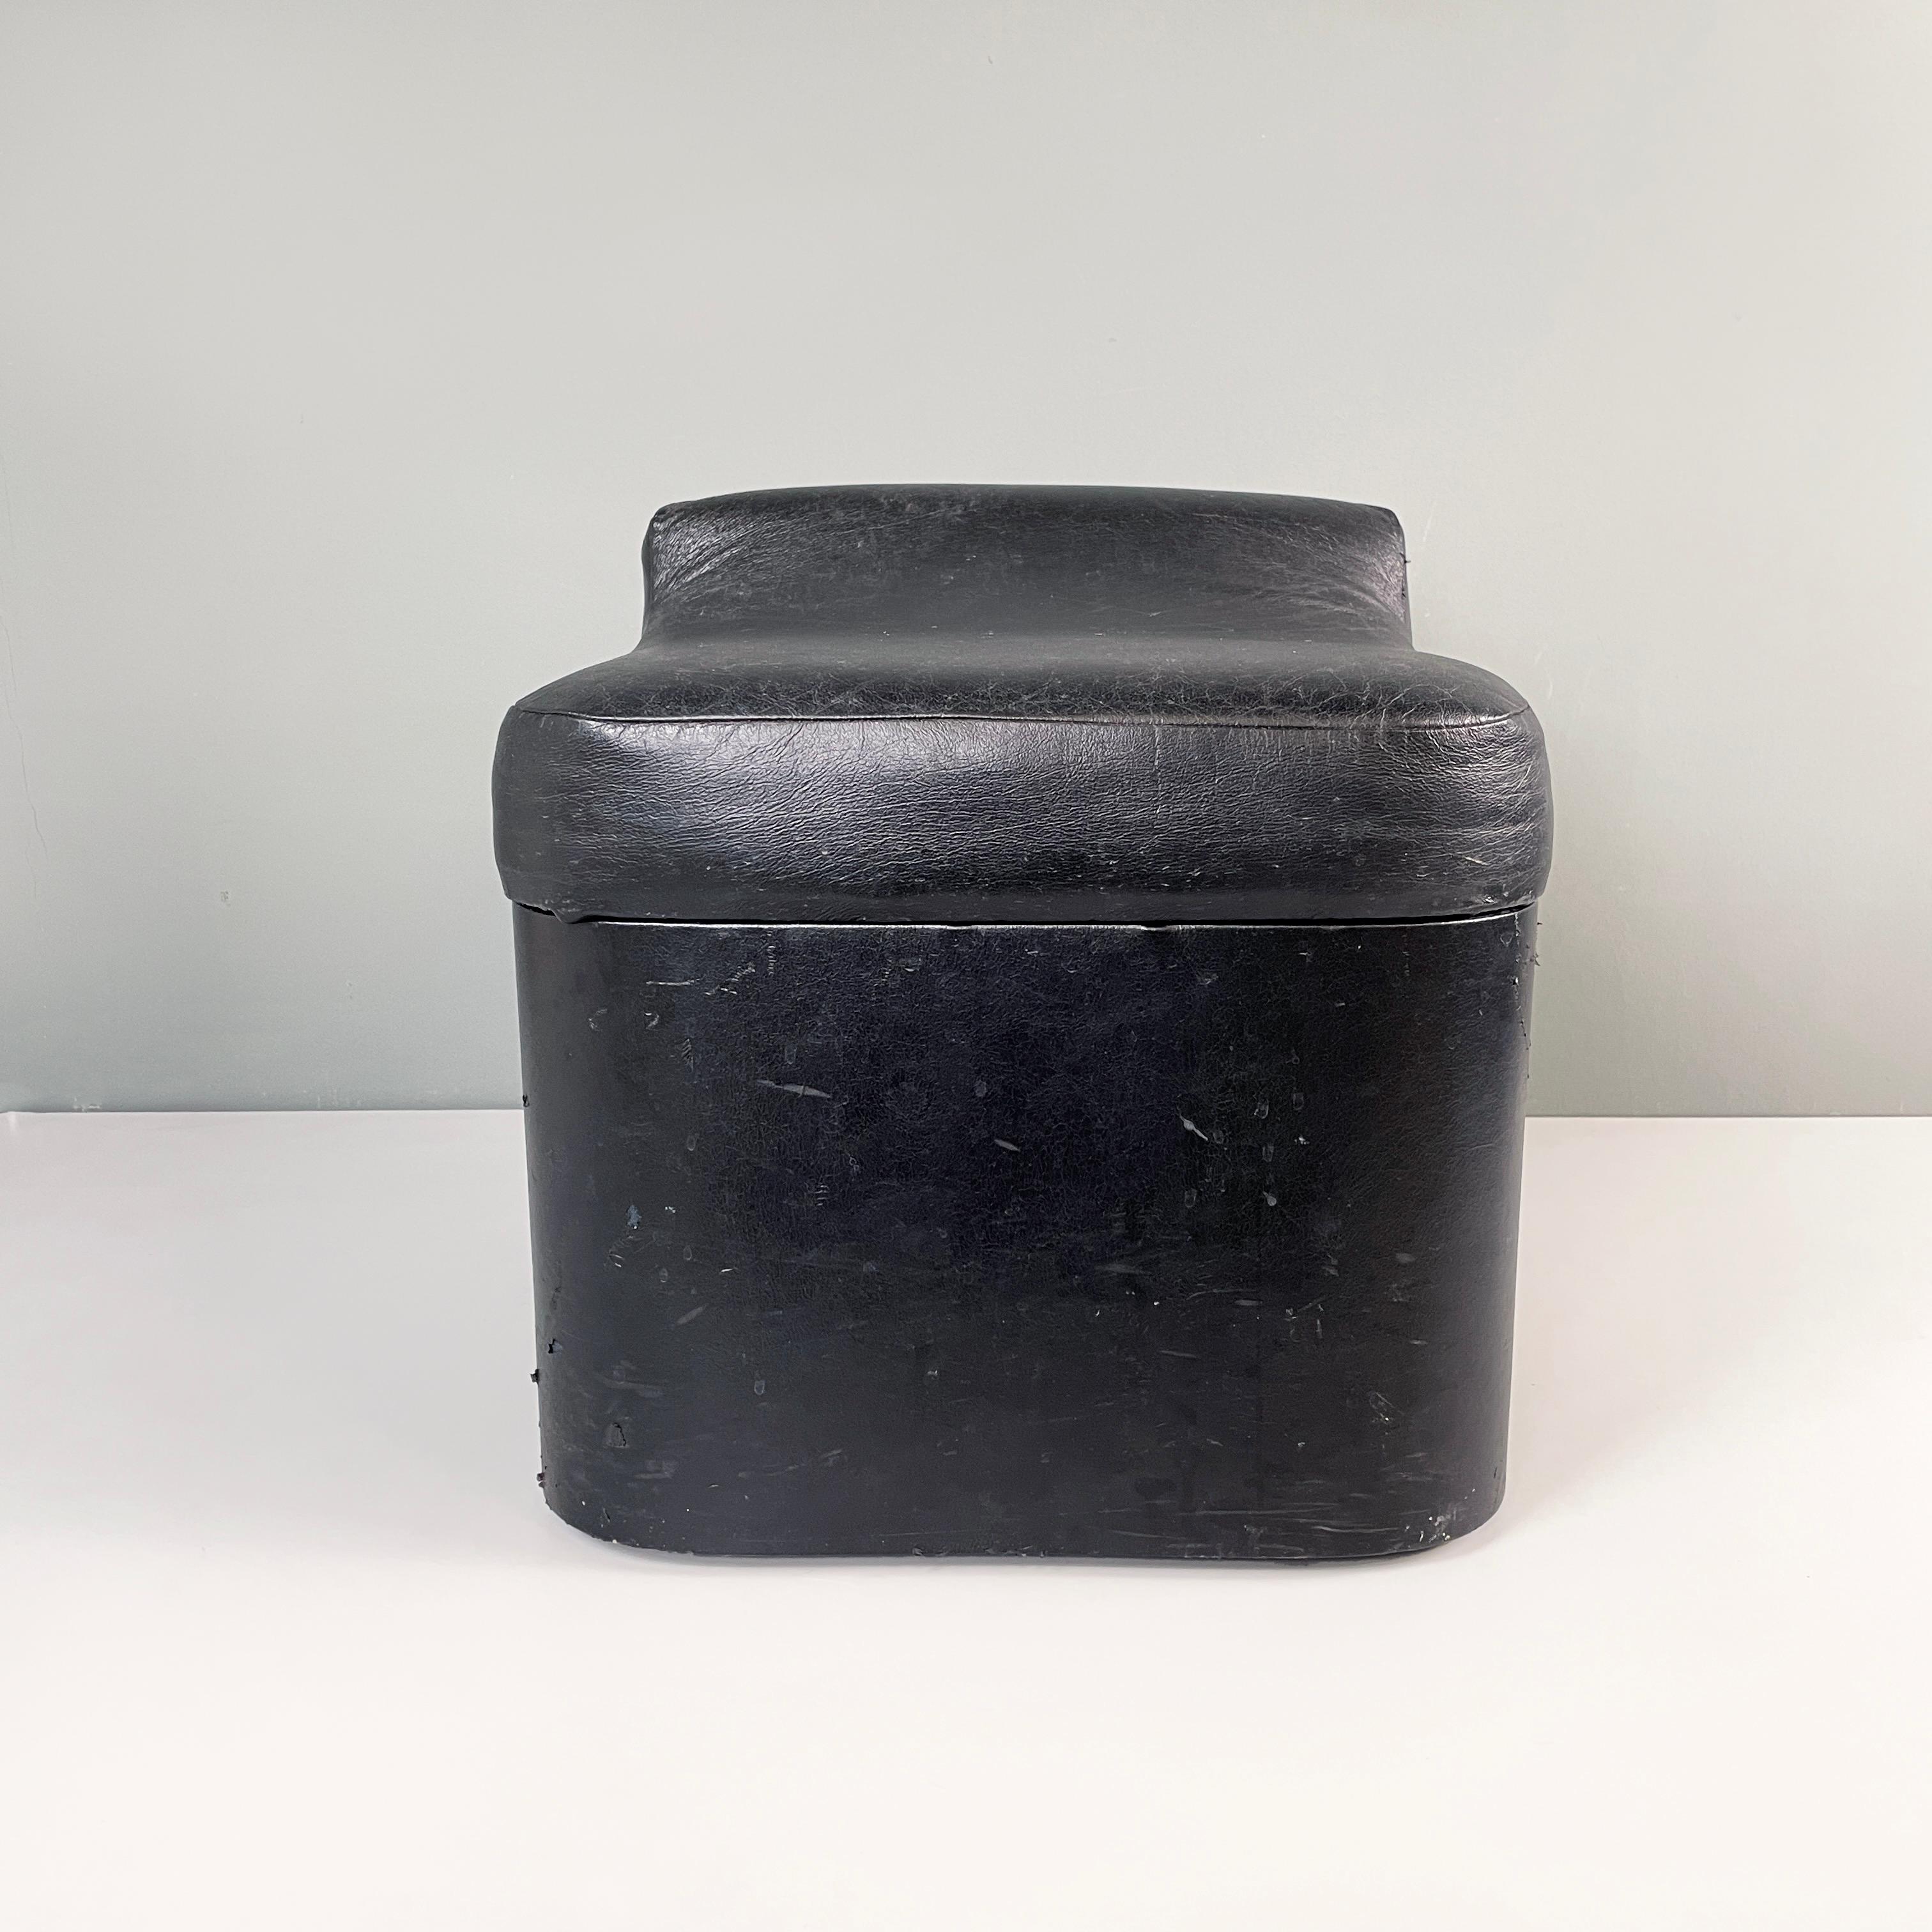 Tabouret carré moderne italien en faux cuir noir avec roues, années 1980
Pouf à base carrée en faux cuir noir. Le tabouret présente une légère élévation au niveau du dossier. Les roulettes à la base permettent de le transporter facilement d'une